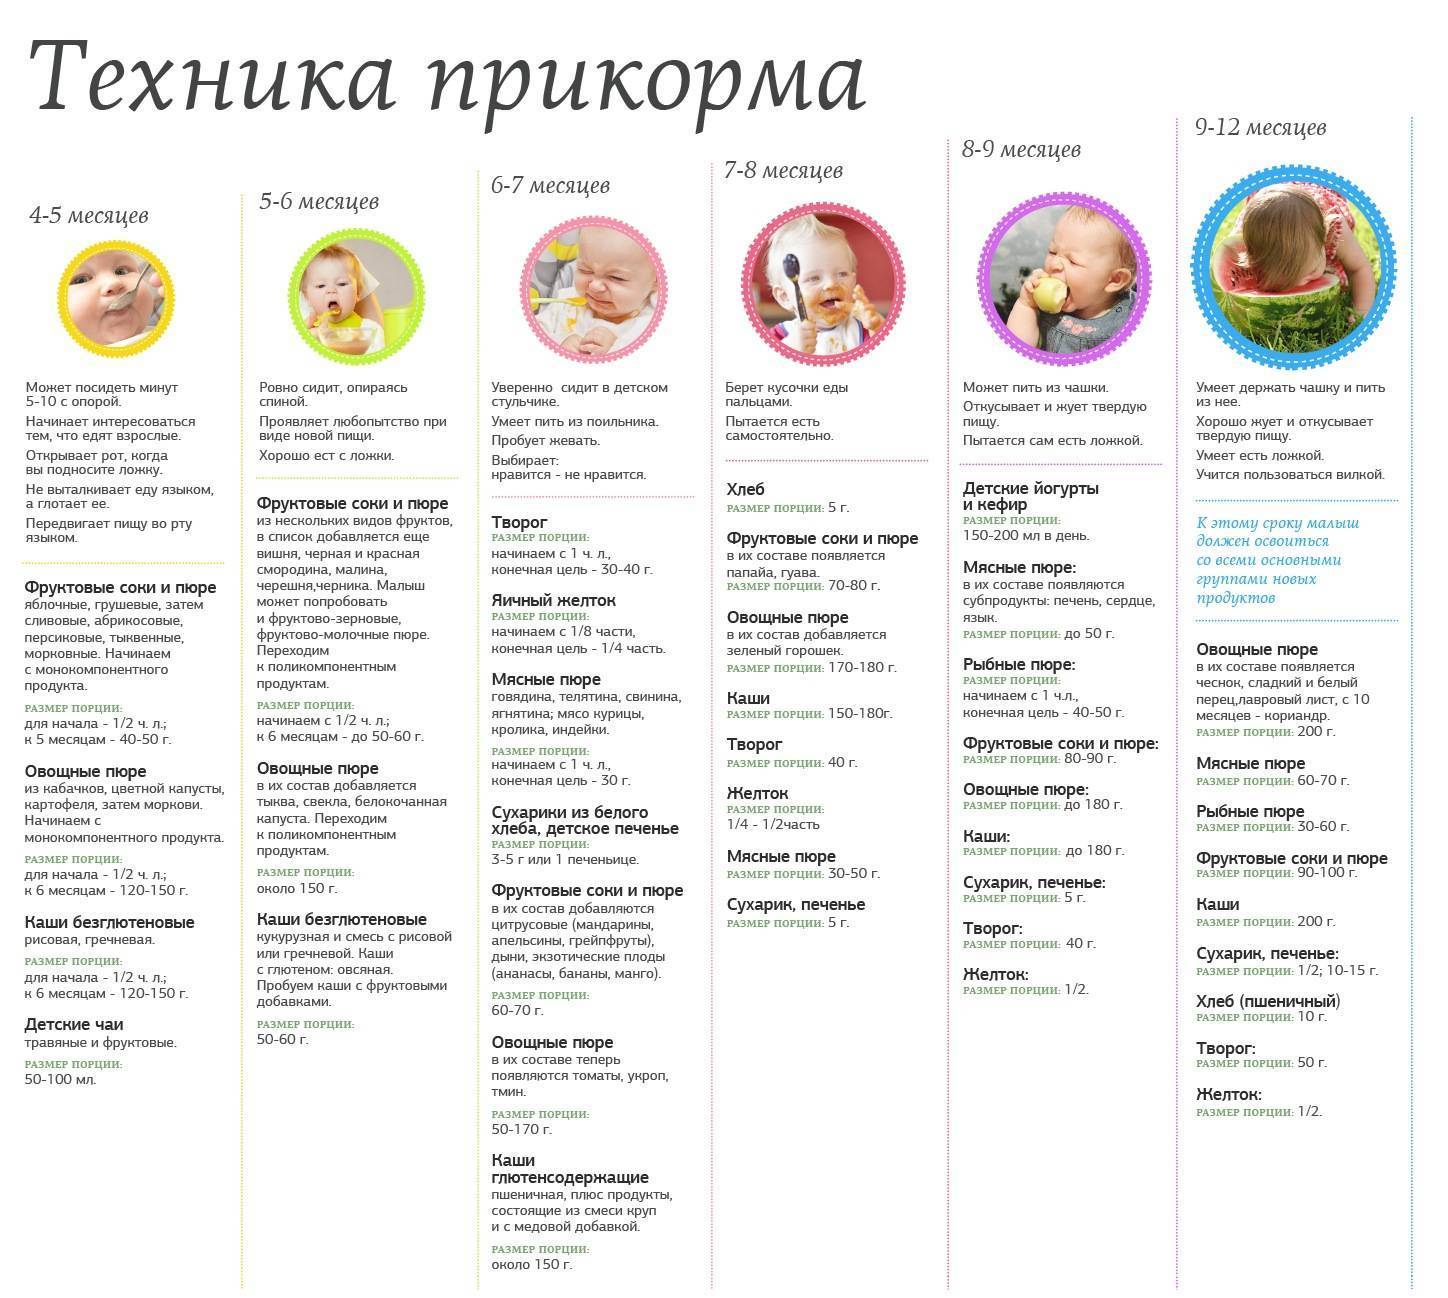 Питание ребенка в 7 месяцев - схема питания и рекомендации по расширению рациона